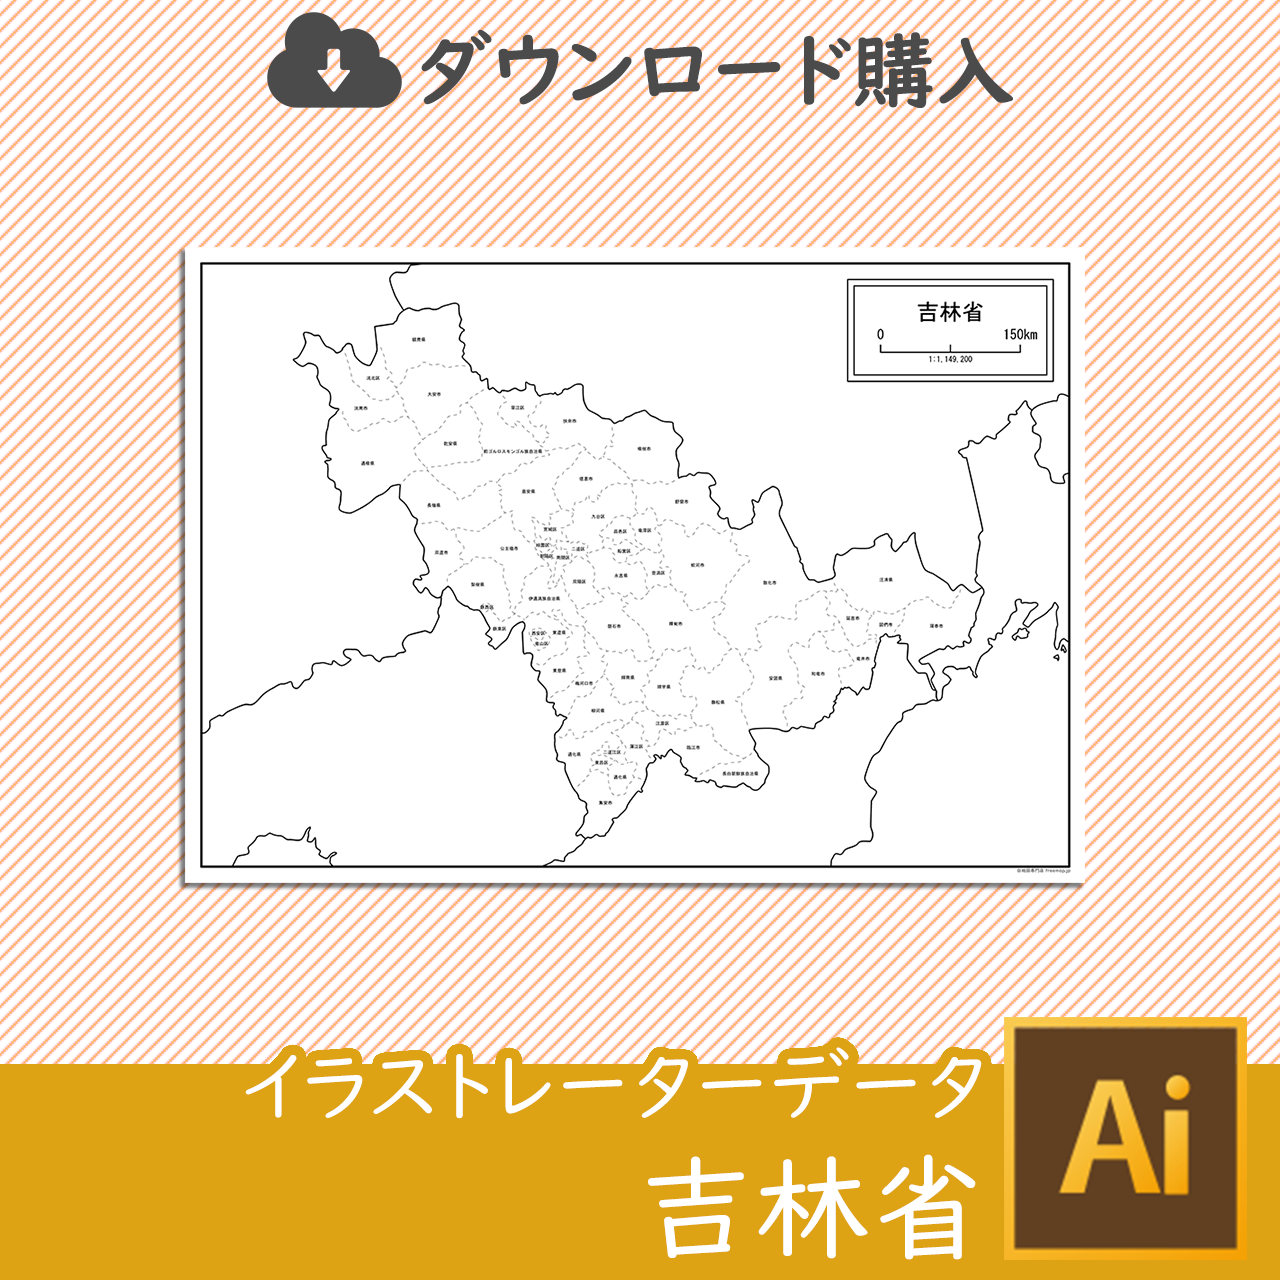 吉林省の白地図データのサムネイル画像